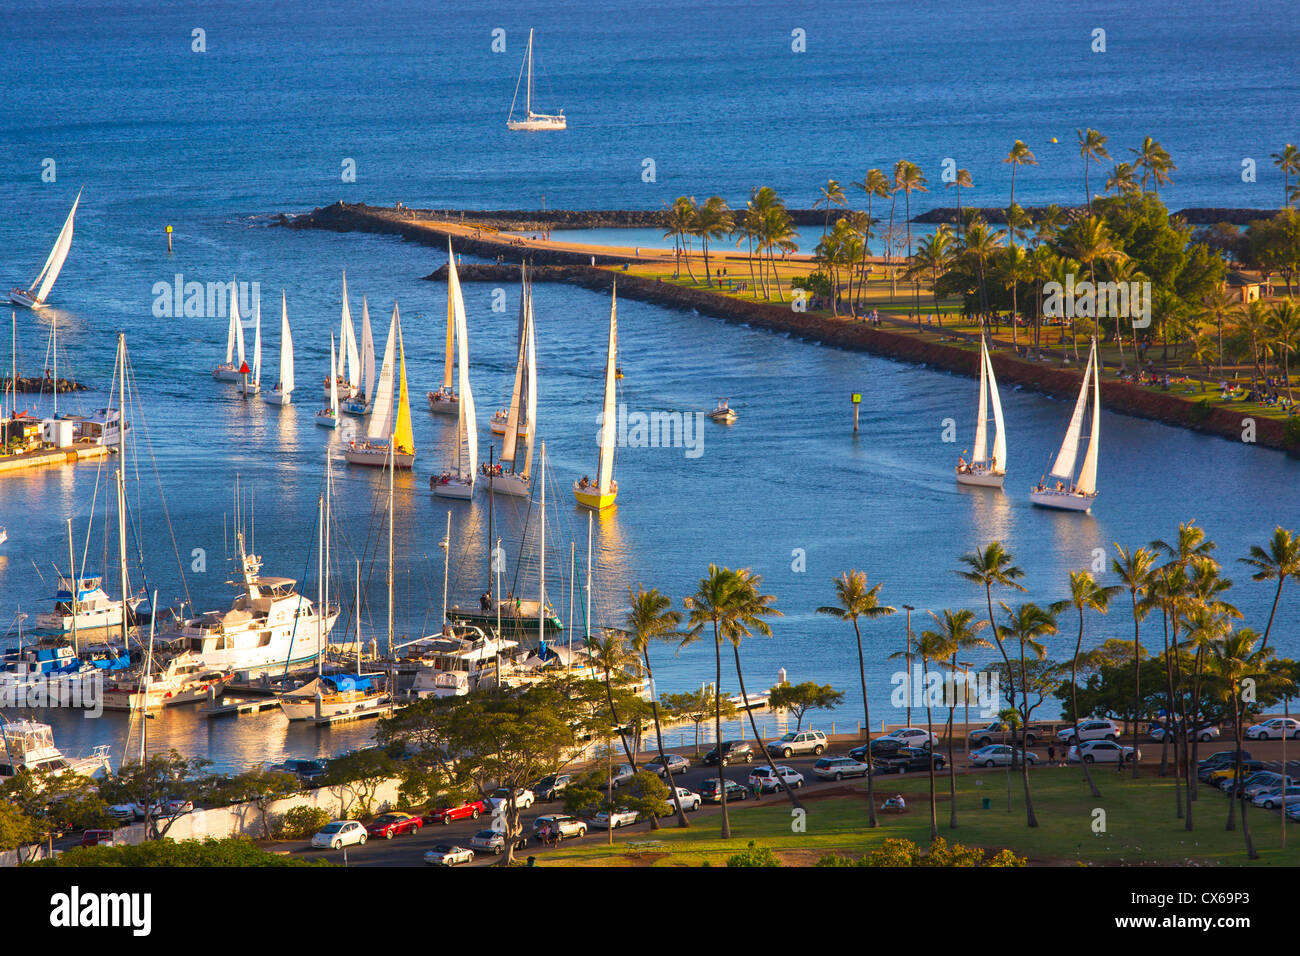 Ala Wai Yacht Harbour, Waikiki, Oahu, Hawaii Banque D'Images